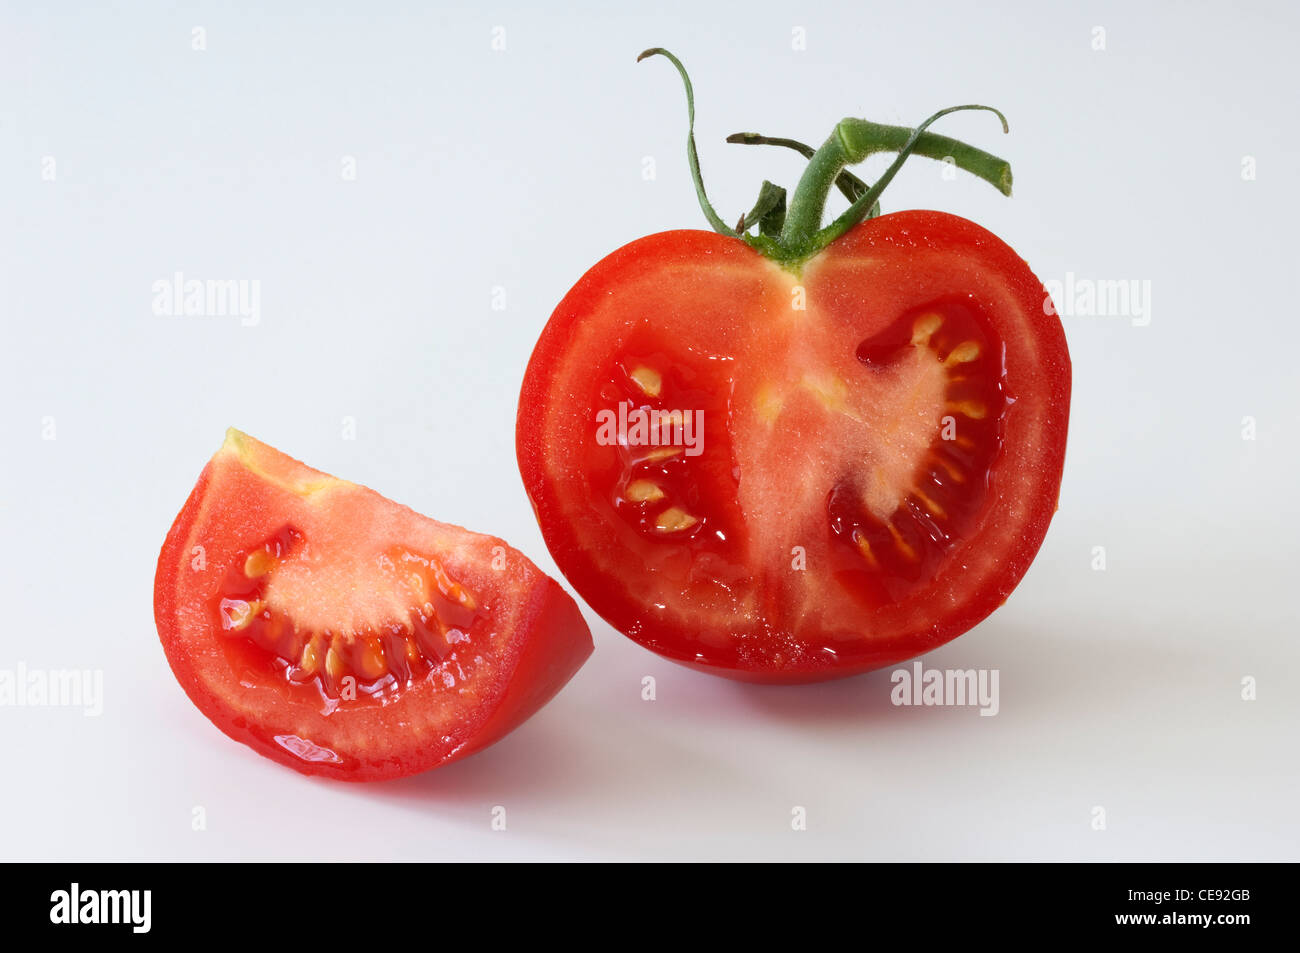 Tomate (Lycopersicon esculentum), reducido a la mitad la fruta. Studio picture contra un fondo blanco. Foto de stock